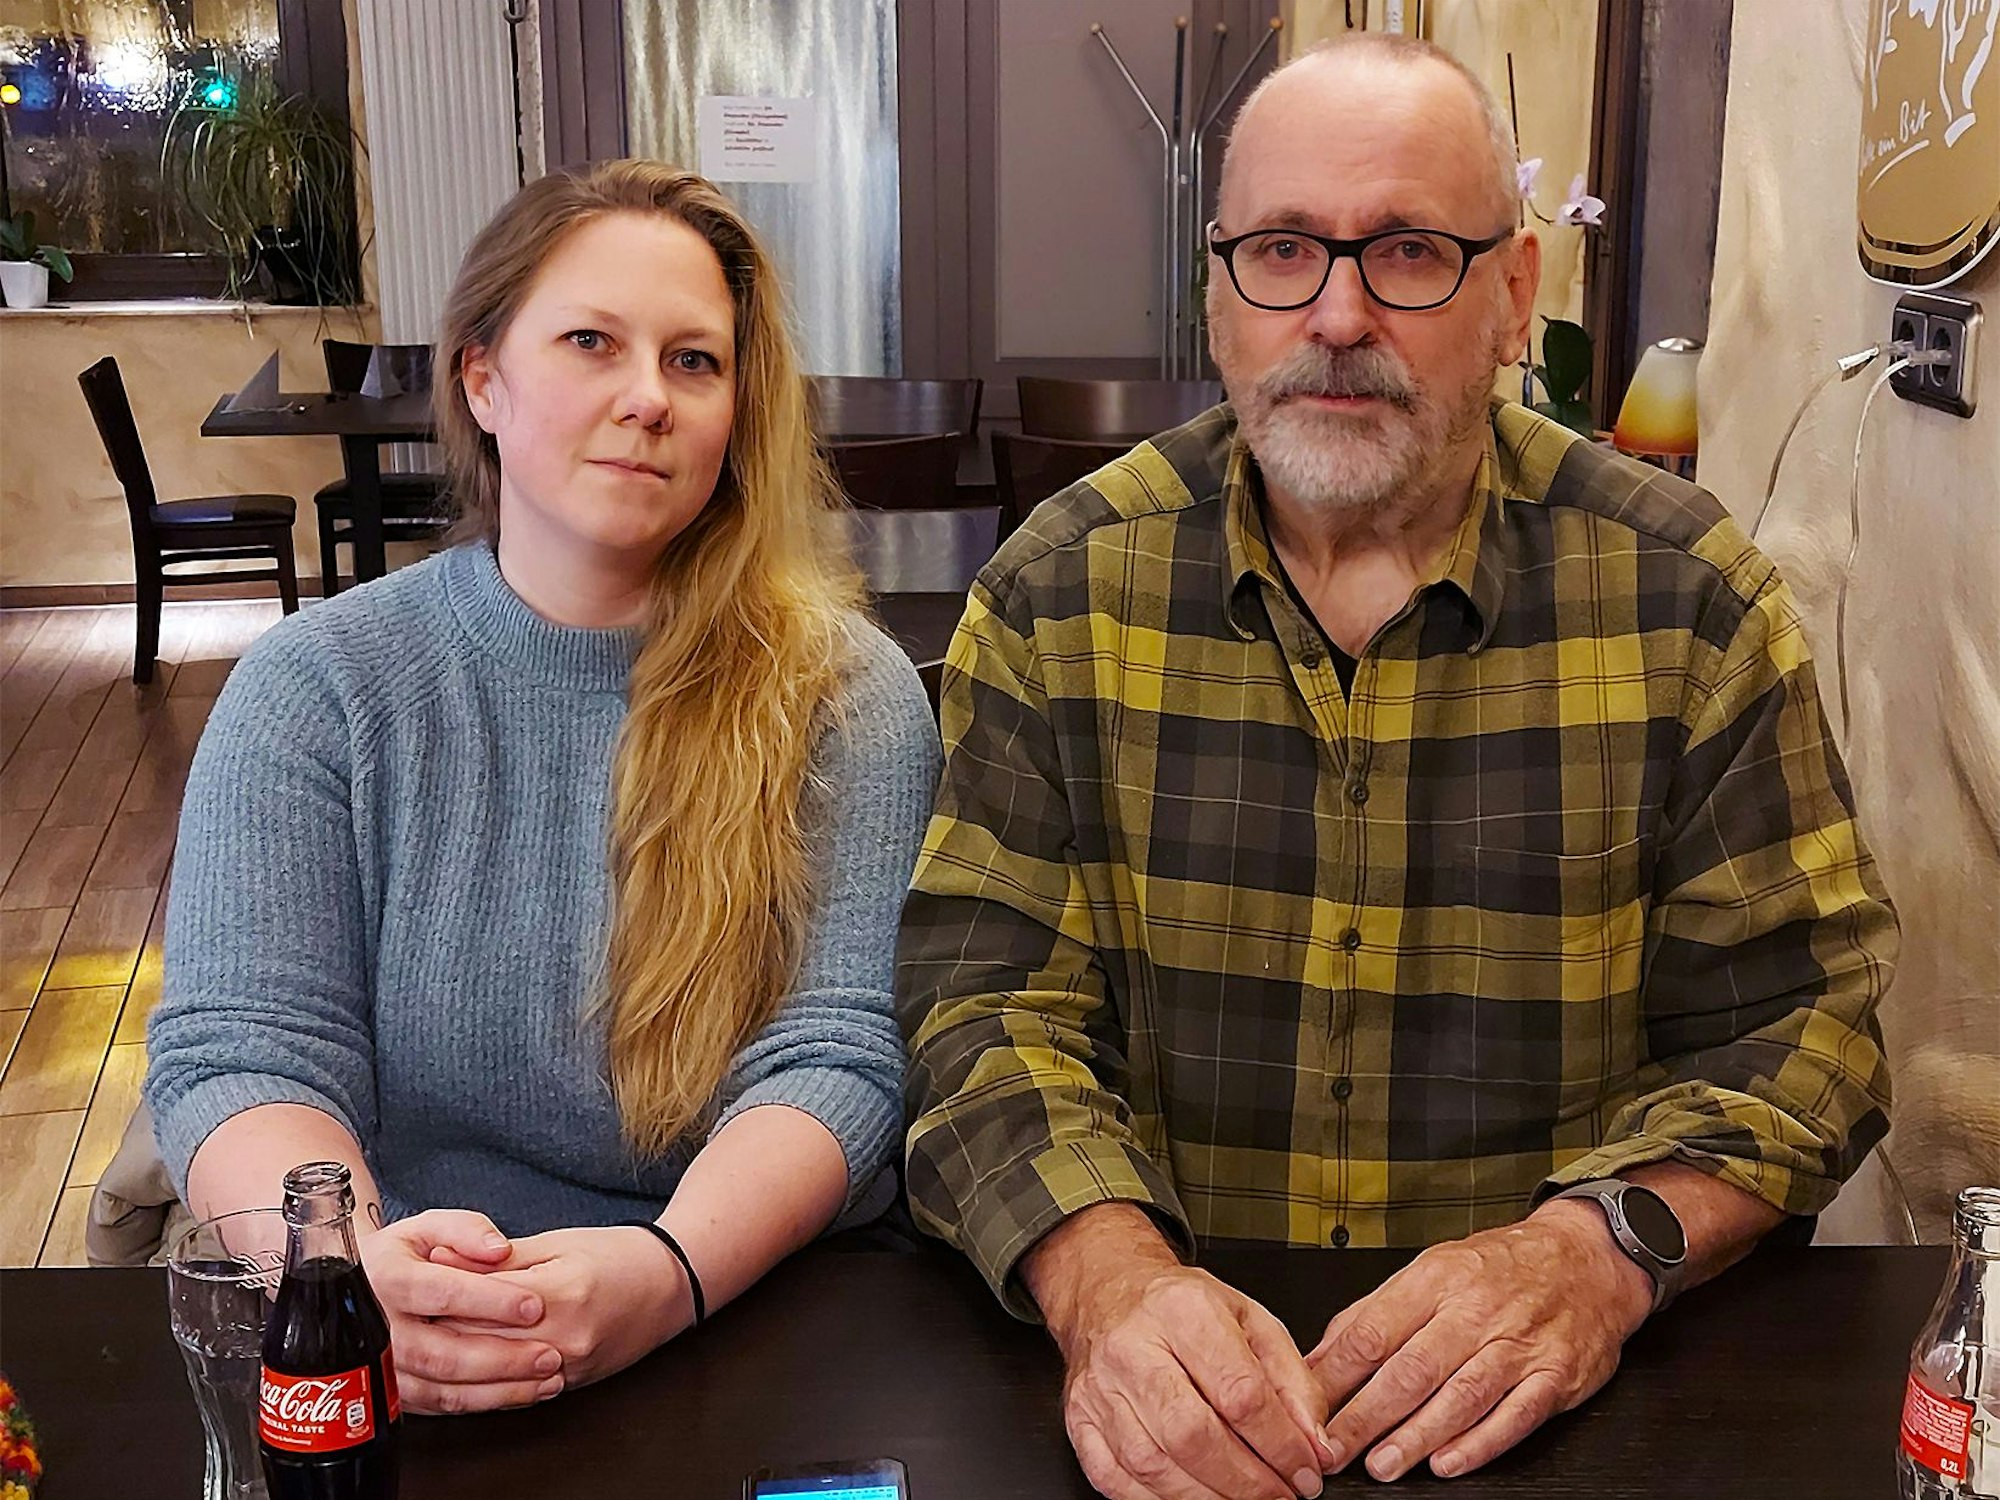 Klaus Jansen und Tamara Kopelke bilden das Team Gedenken. Bei einer Cola sitzen sie in einer Gaststätte und berichten von ihrer Arbeit.